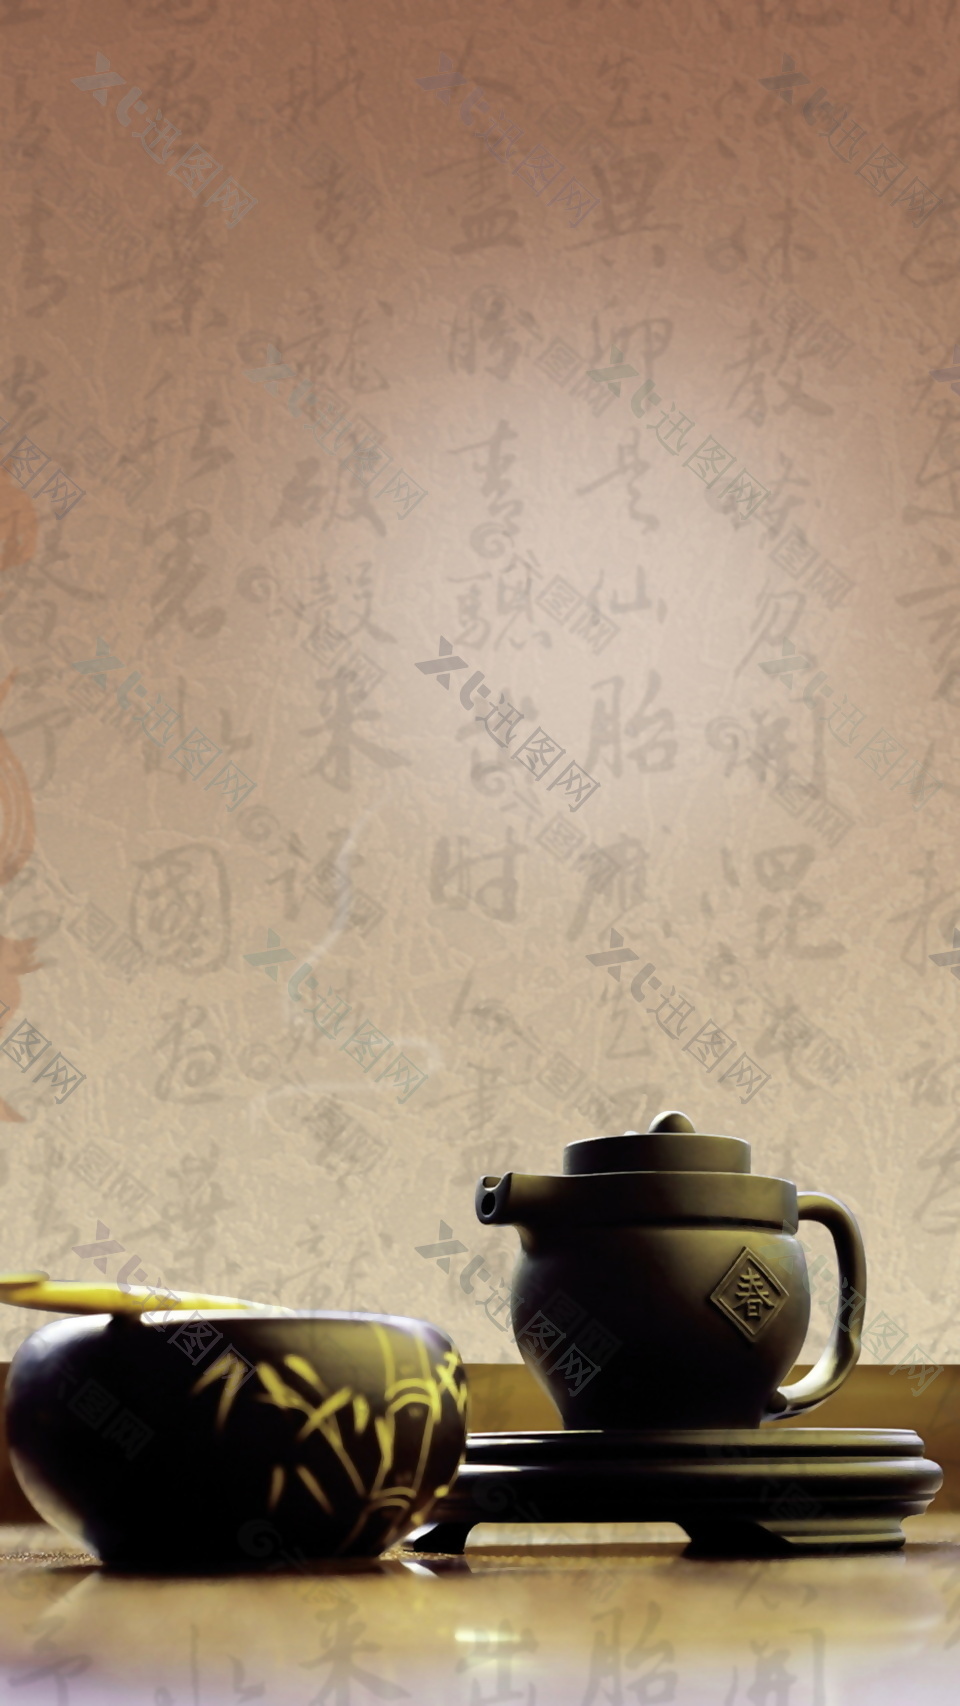 中国风水墨字体文化海报背景设计